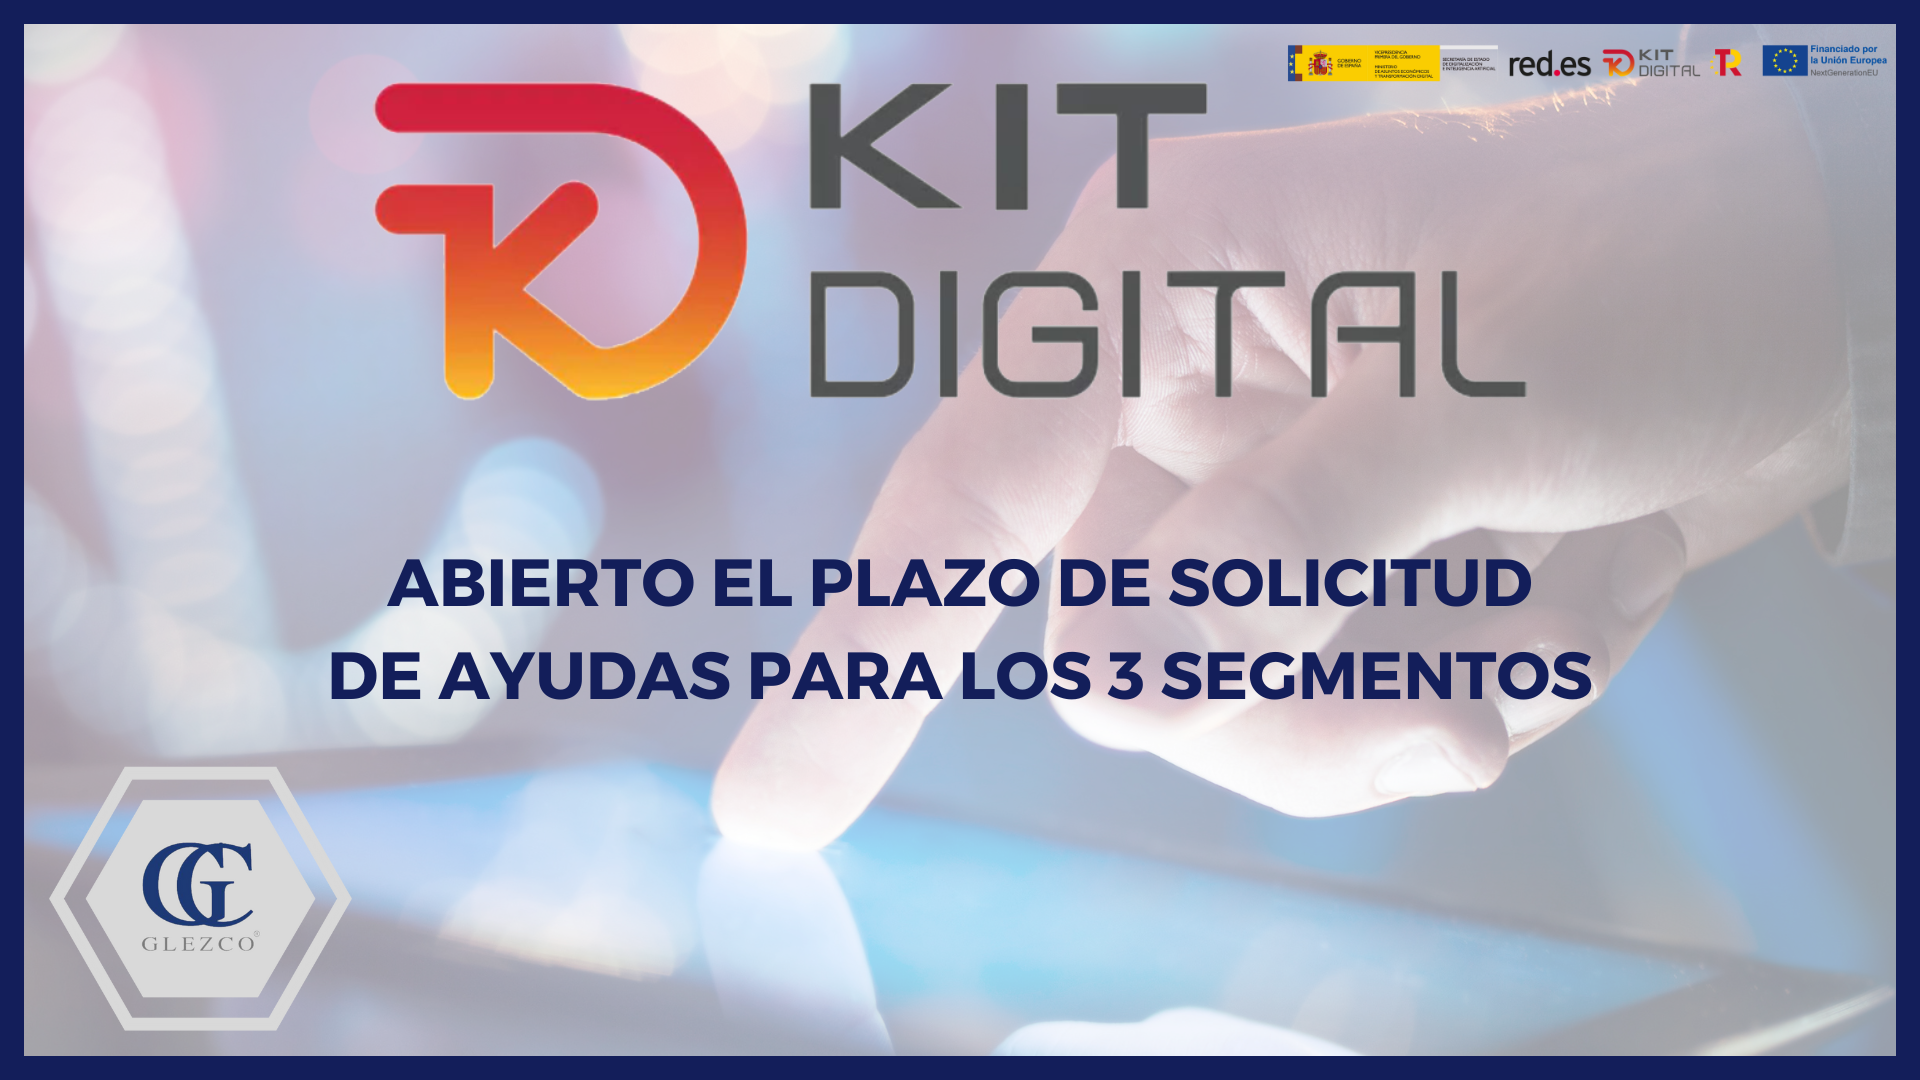 Kit Digital, abierto el plazo de solicitud de ayudas para los 3 segmentos